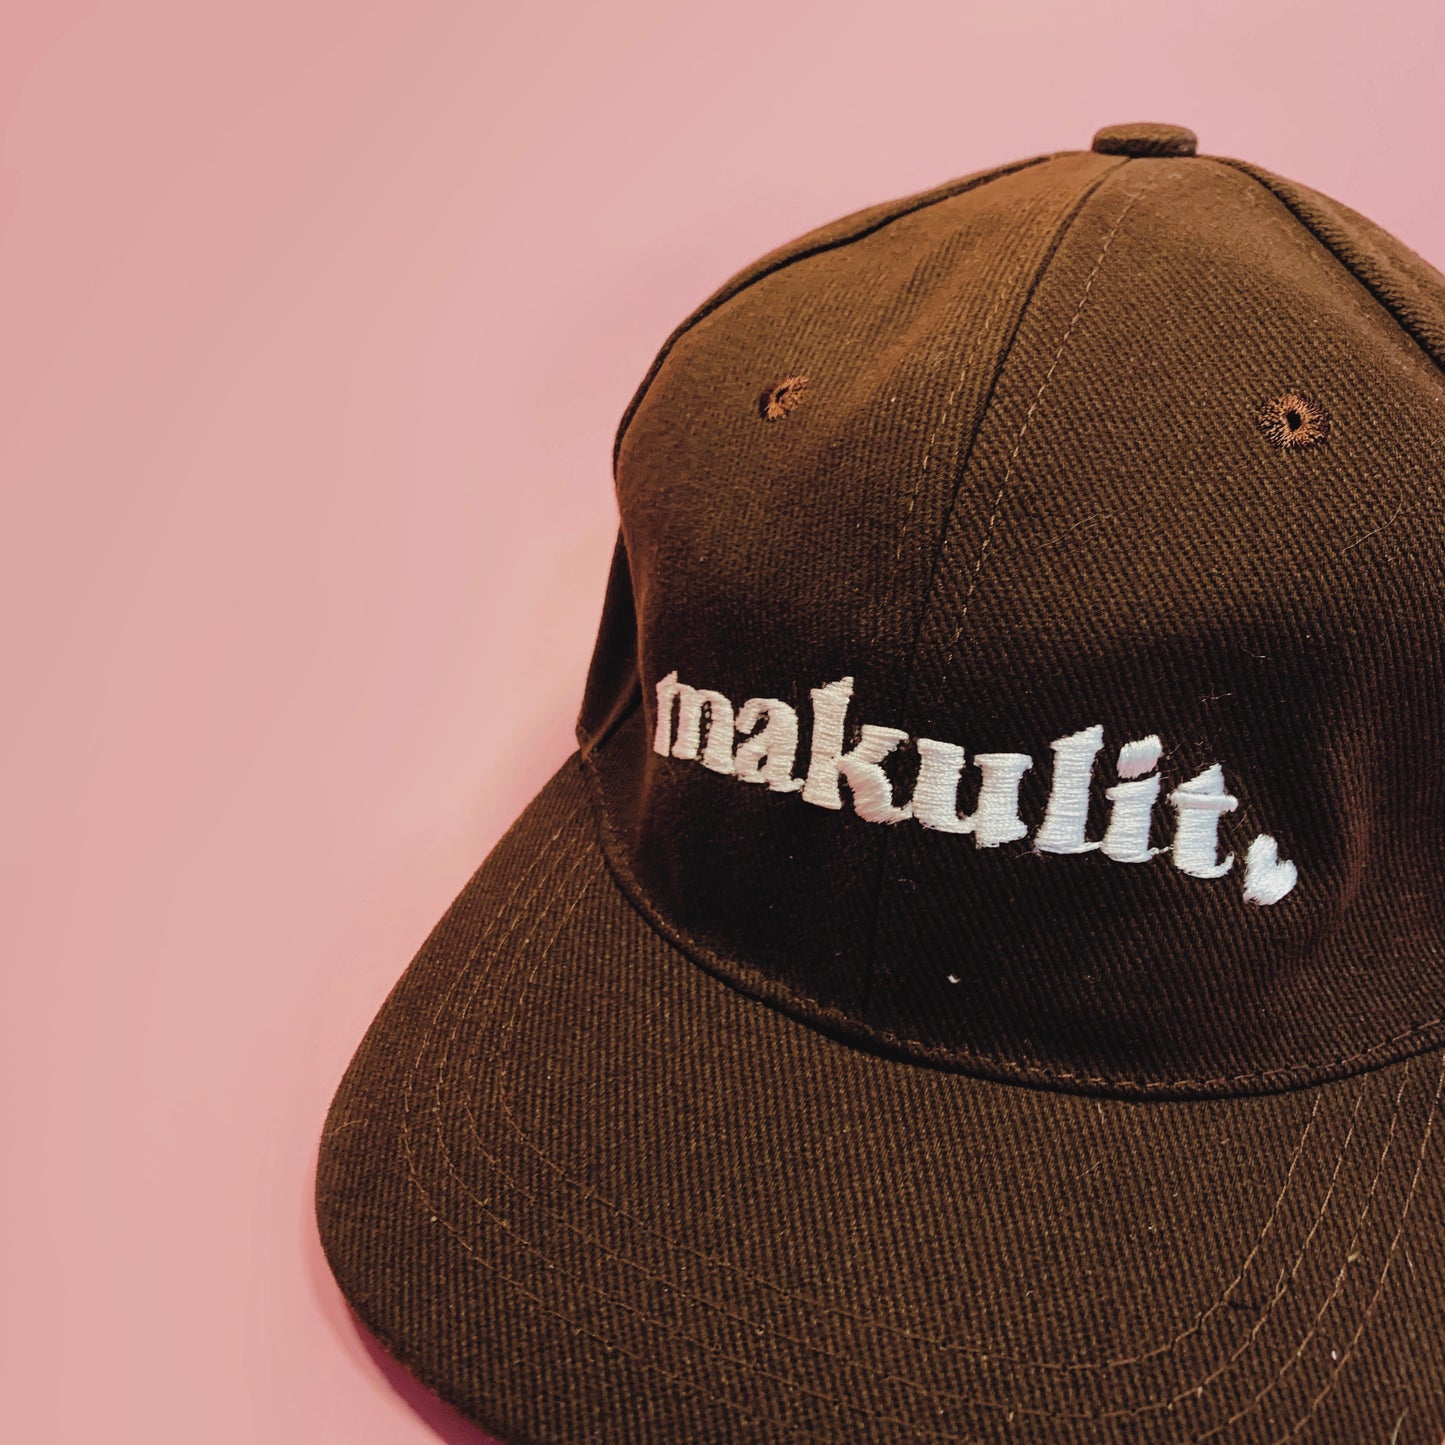 Makulit Love Cap in Black, White, Brown